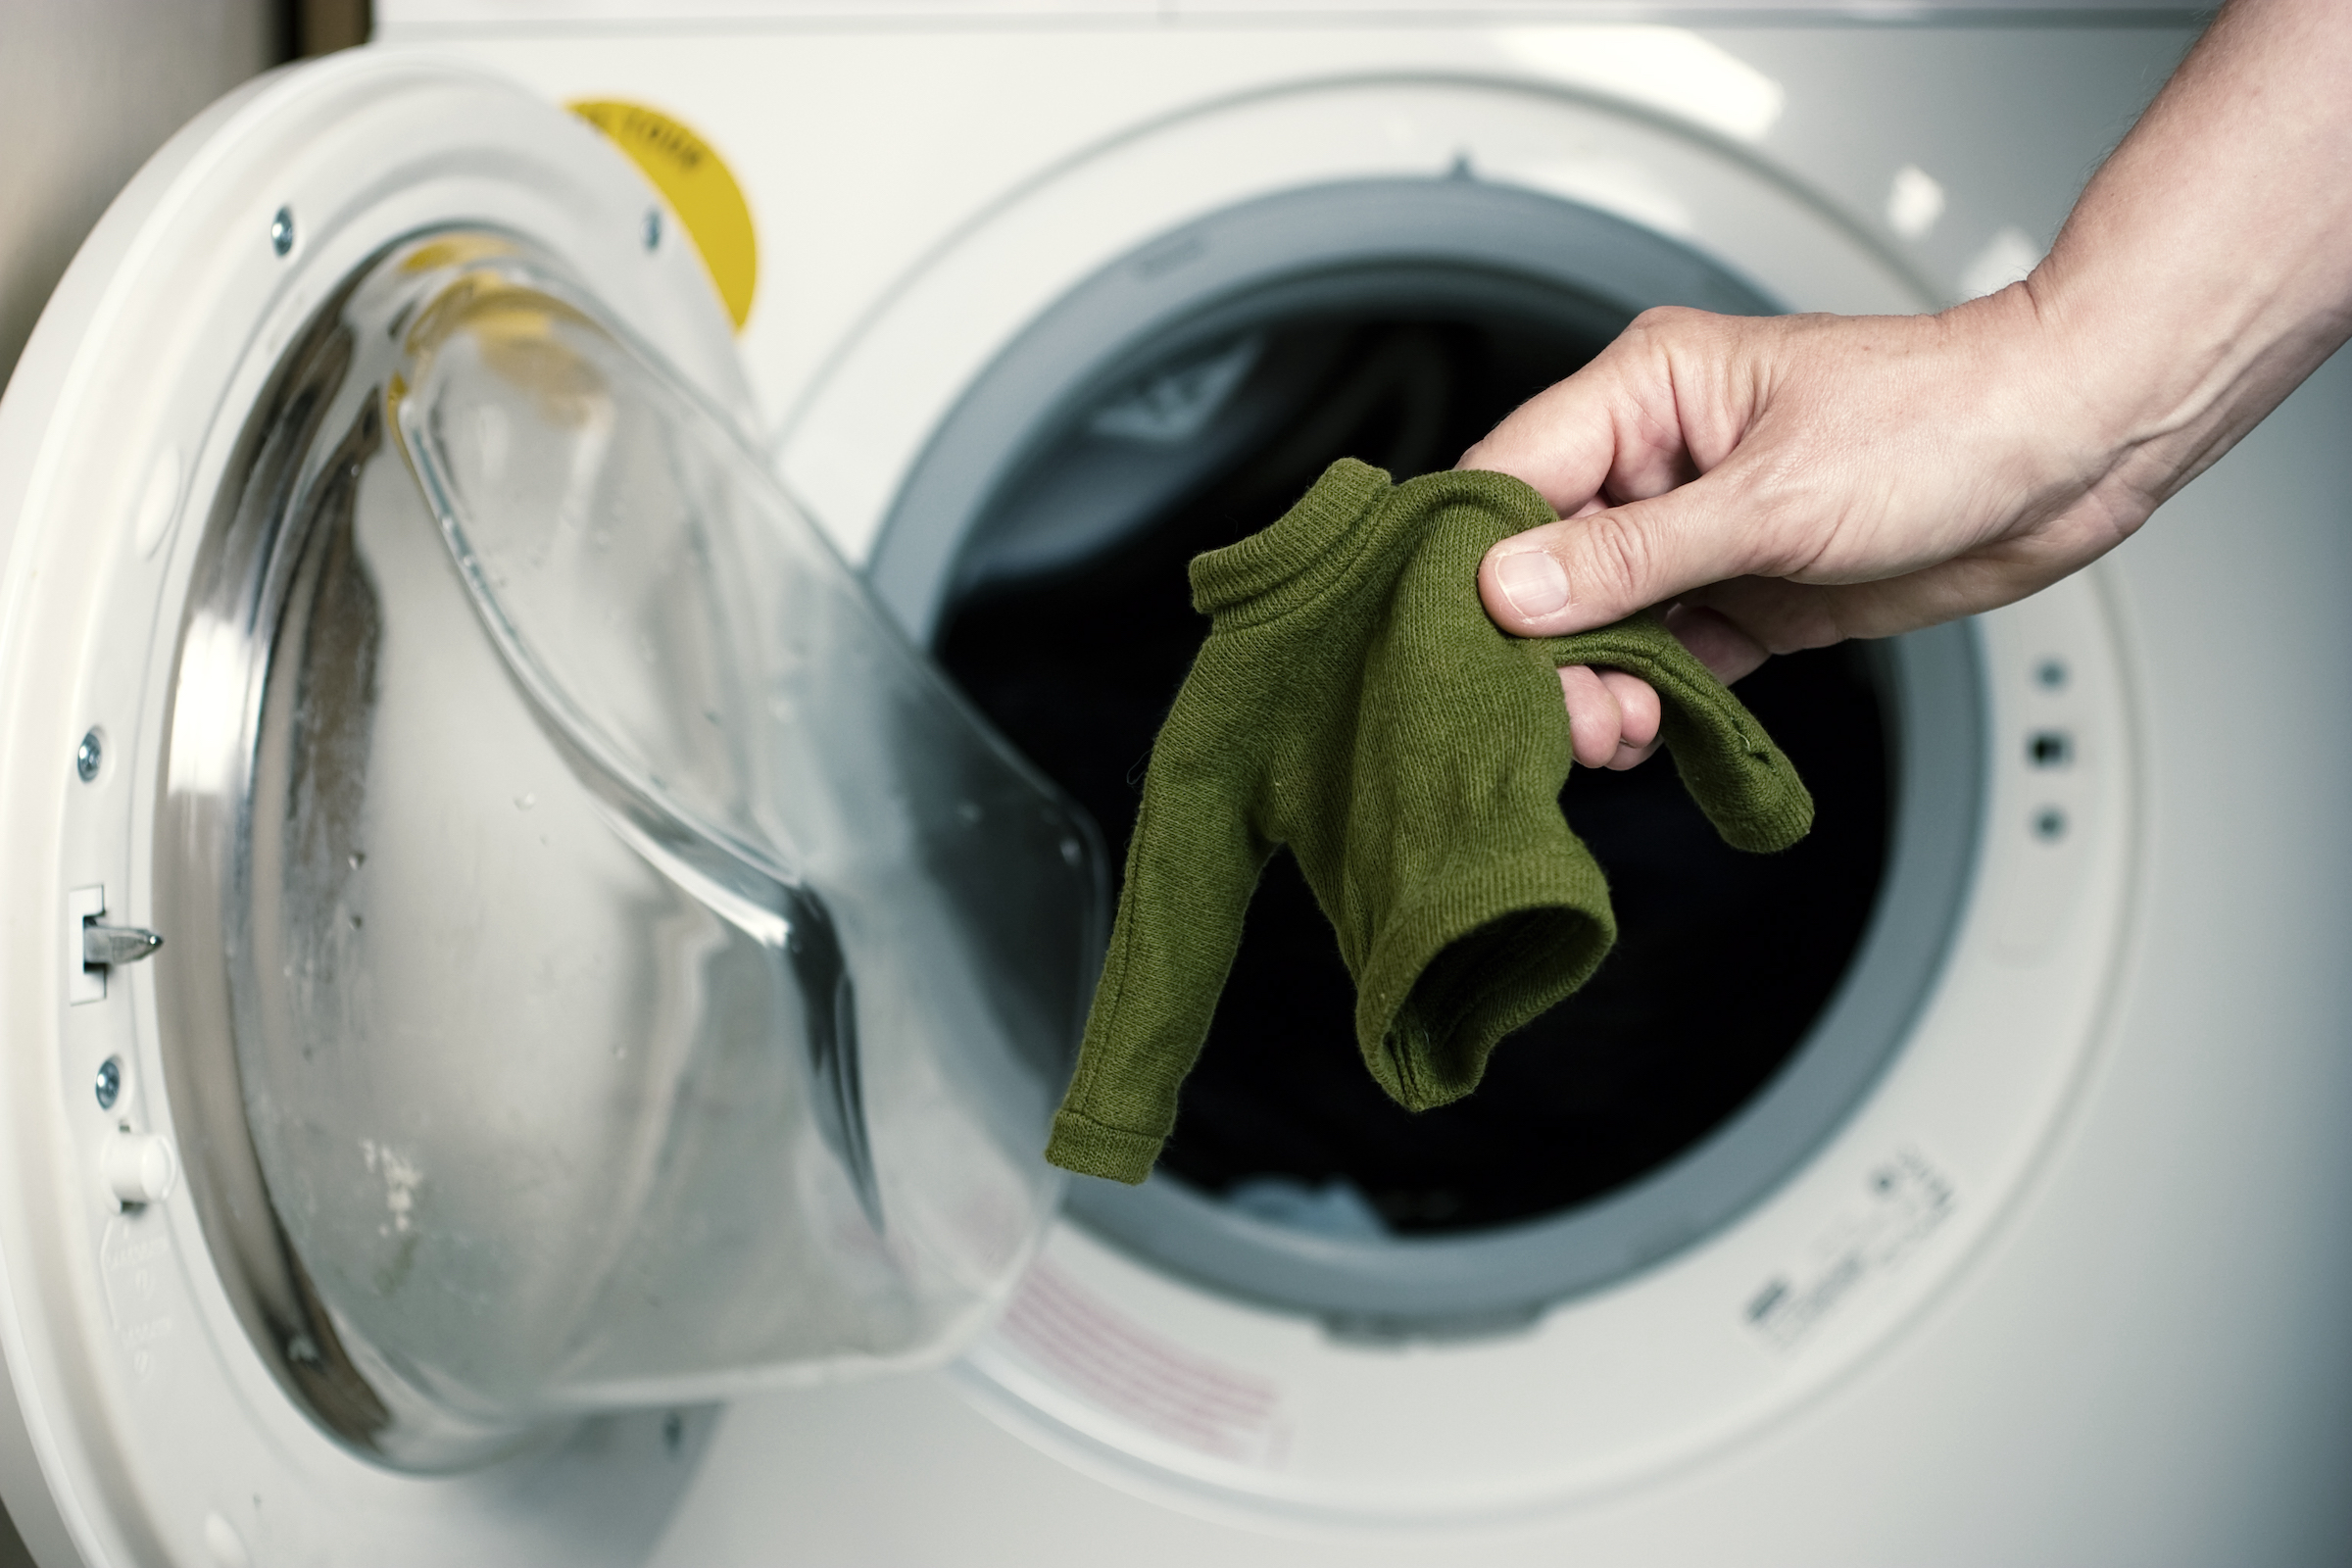 Reanimar cemento en un día festivo Por qué encoge la ropa en la lavadora? Este es el motivo y así puedes  evitarlo | Computer Hoy